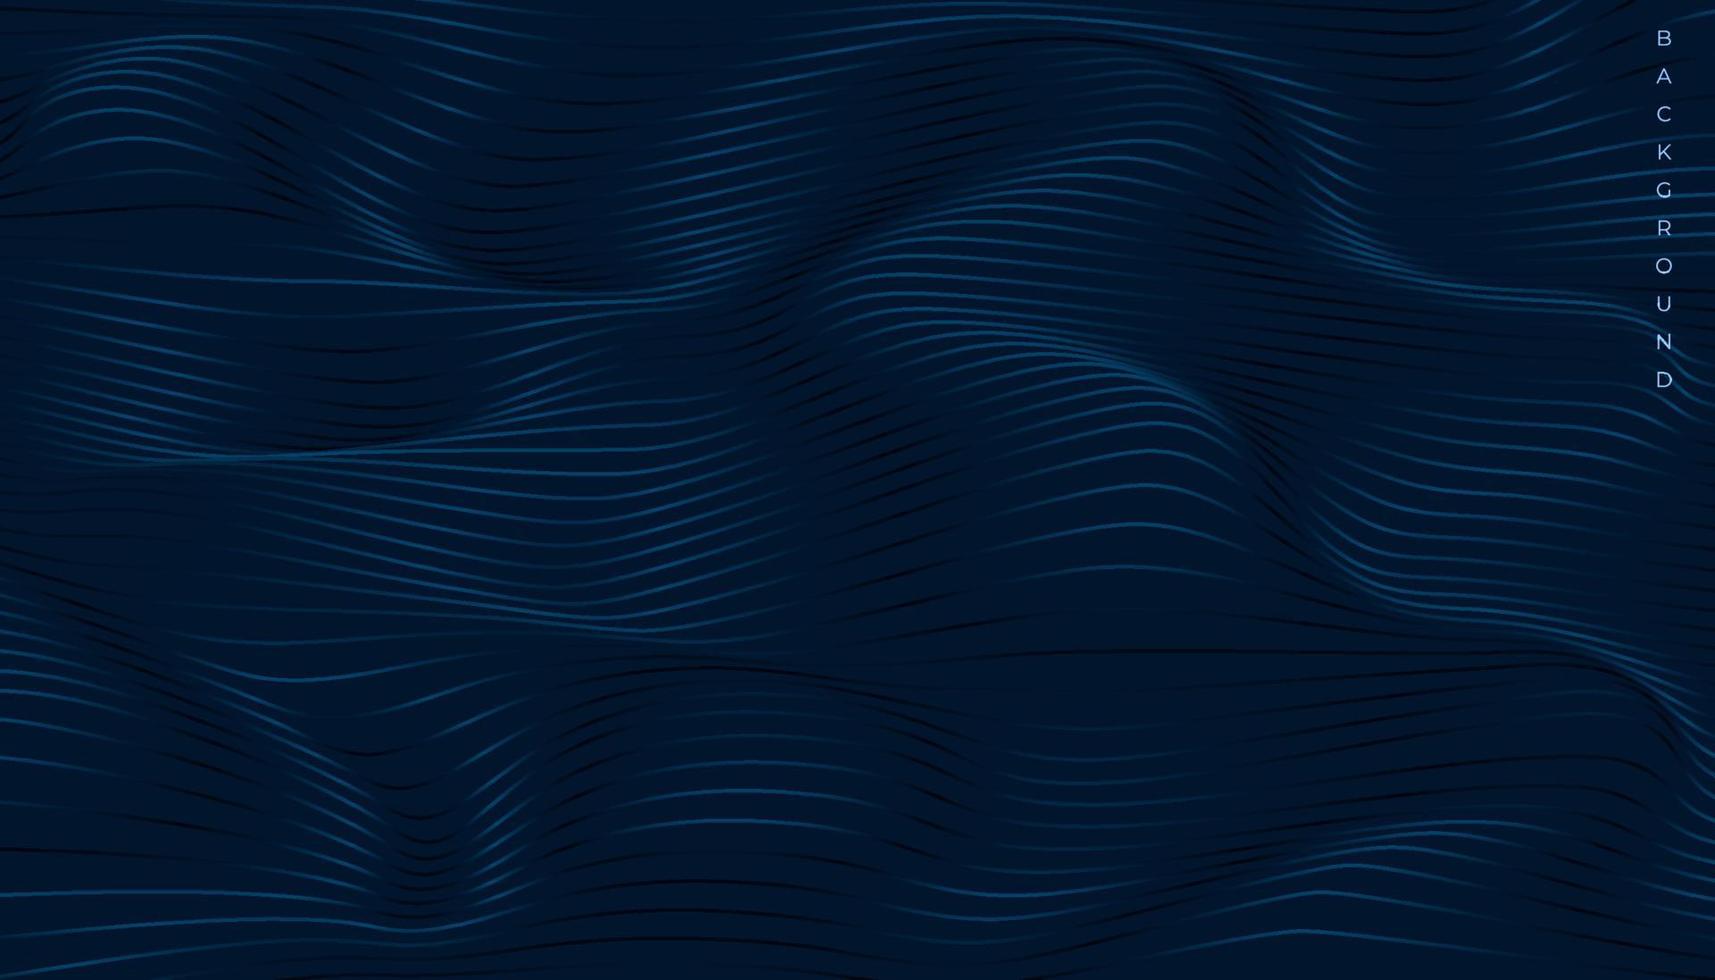 fundo escuro abstrato com linhas onduladas onduladas vetor